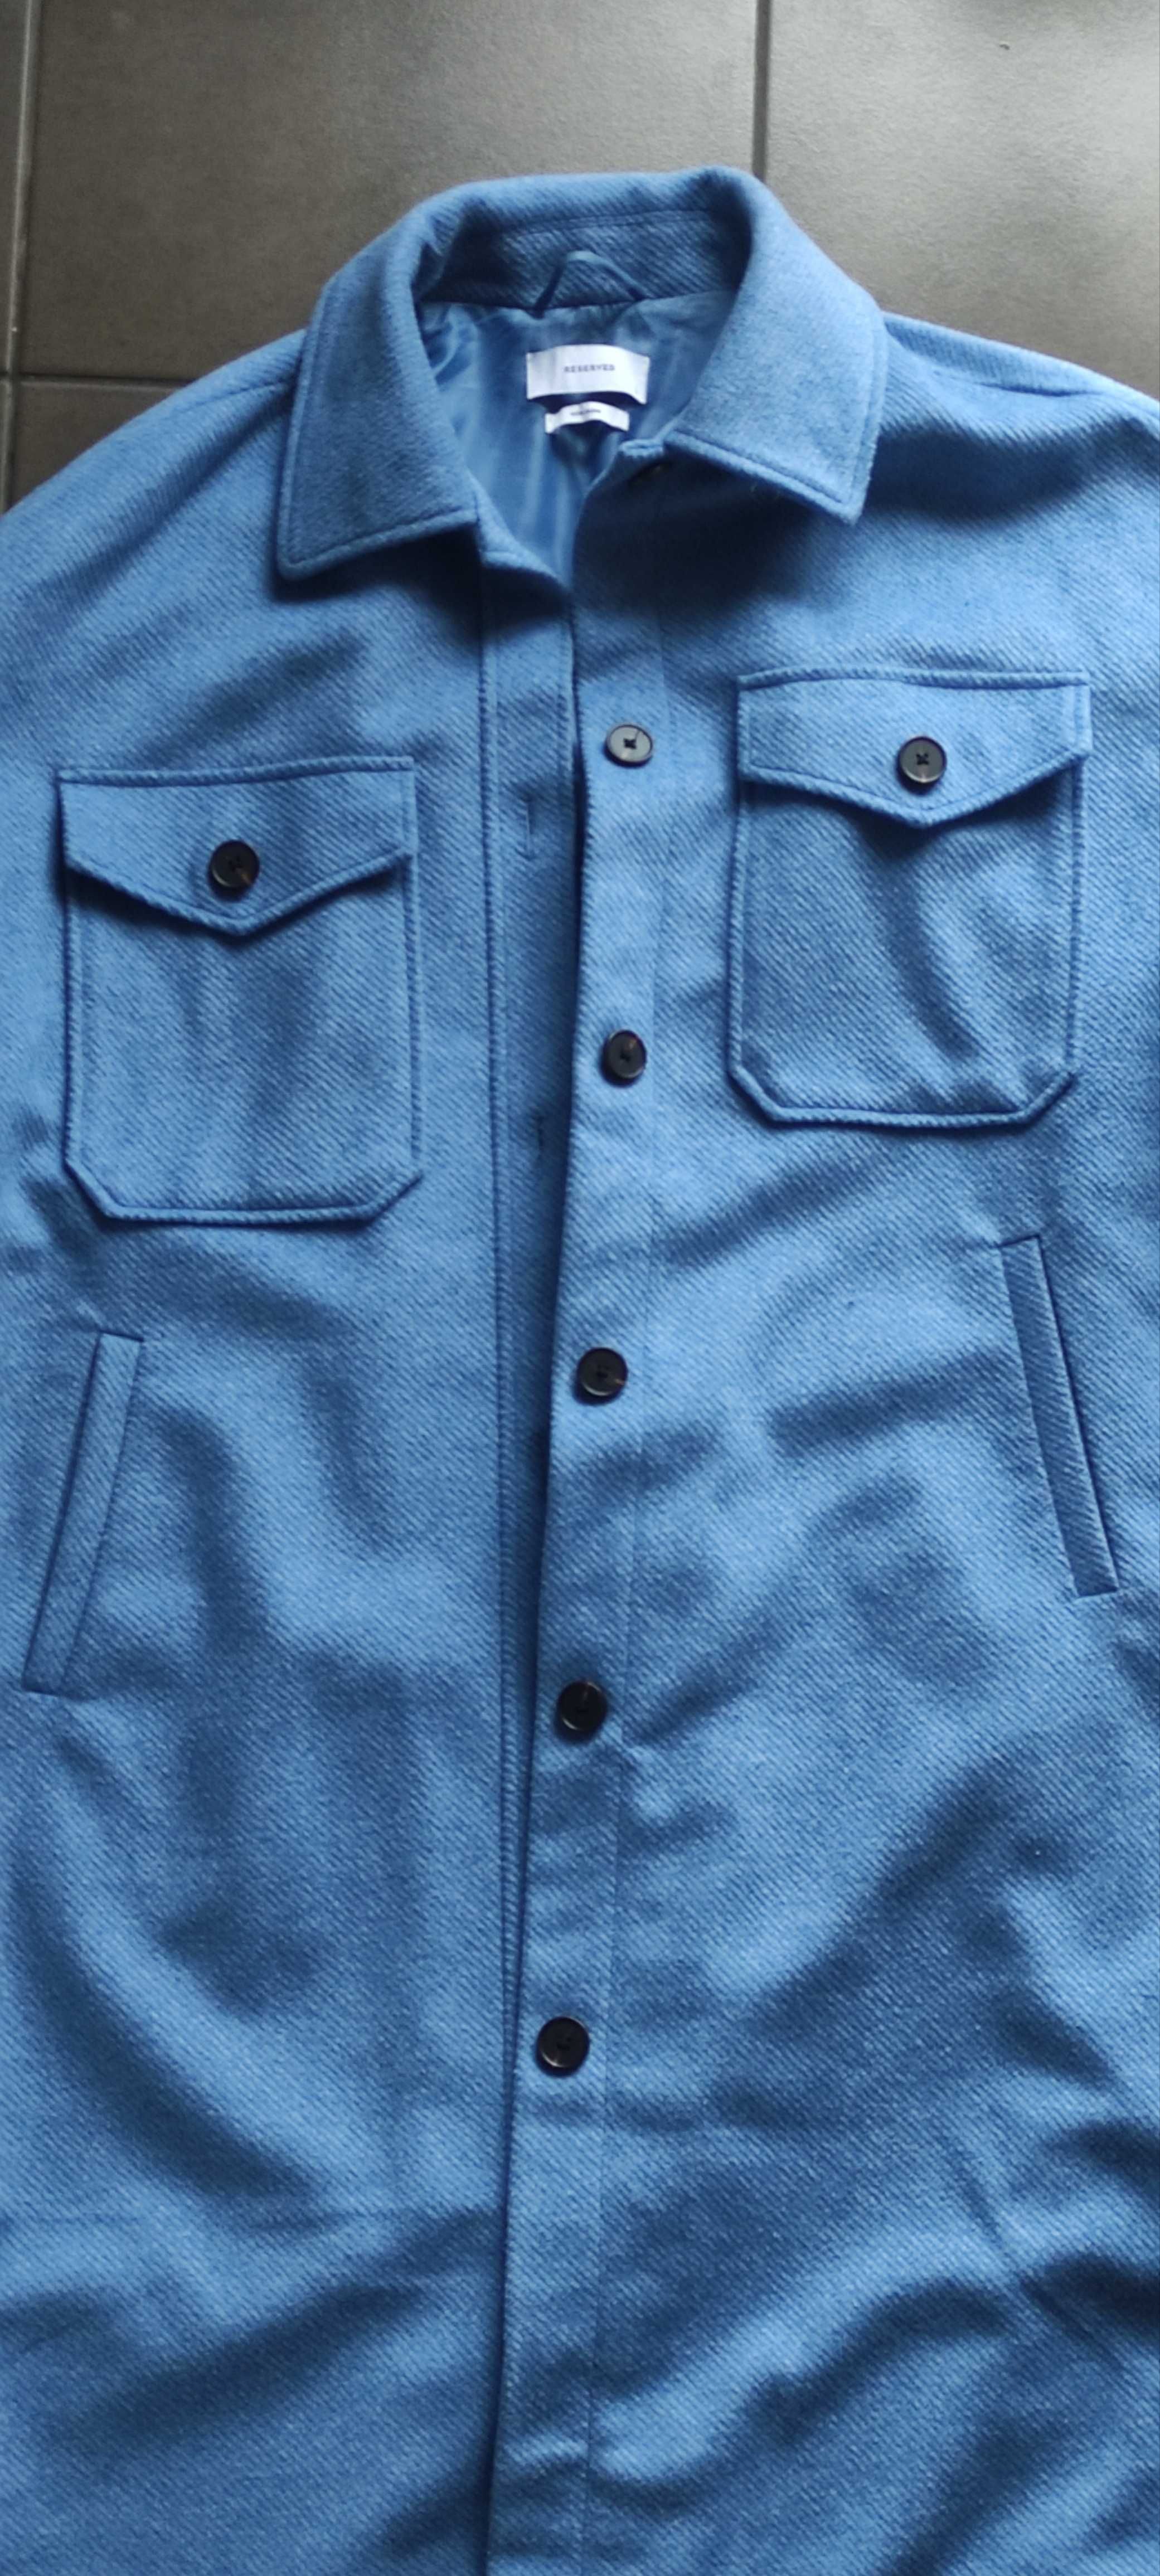 Błękitny płaszcz damski 50 proc. wełna, L RESERVED